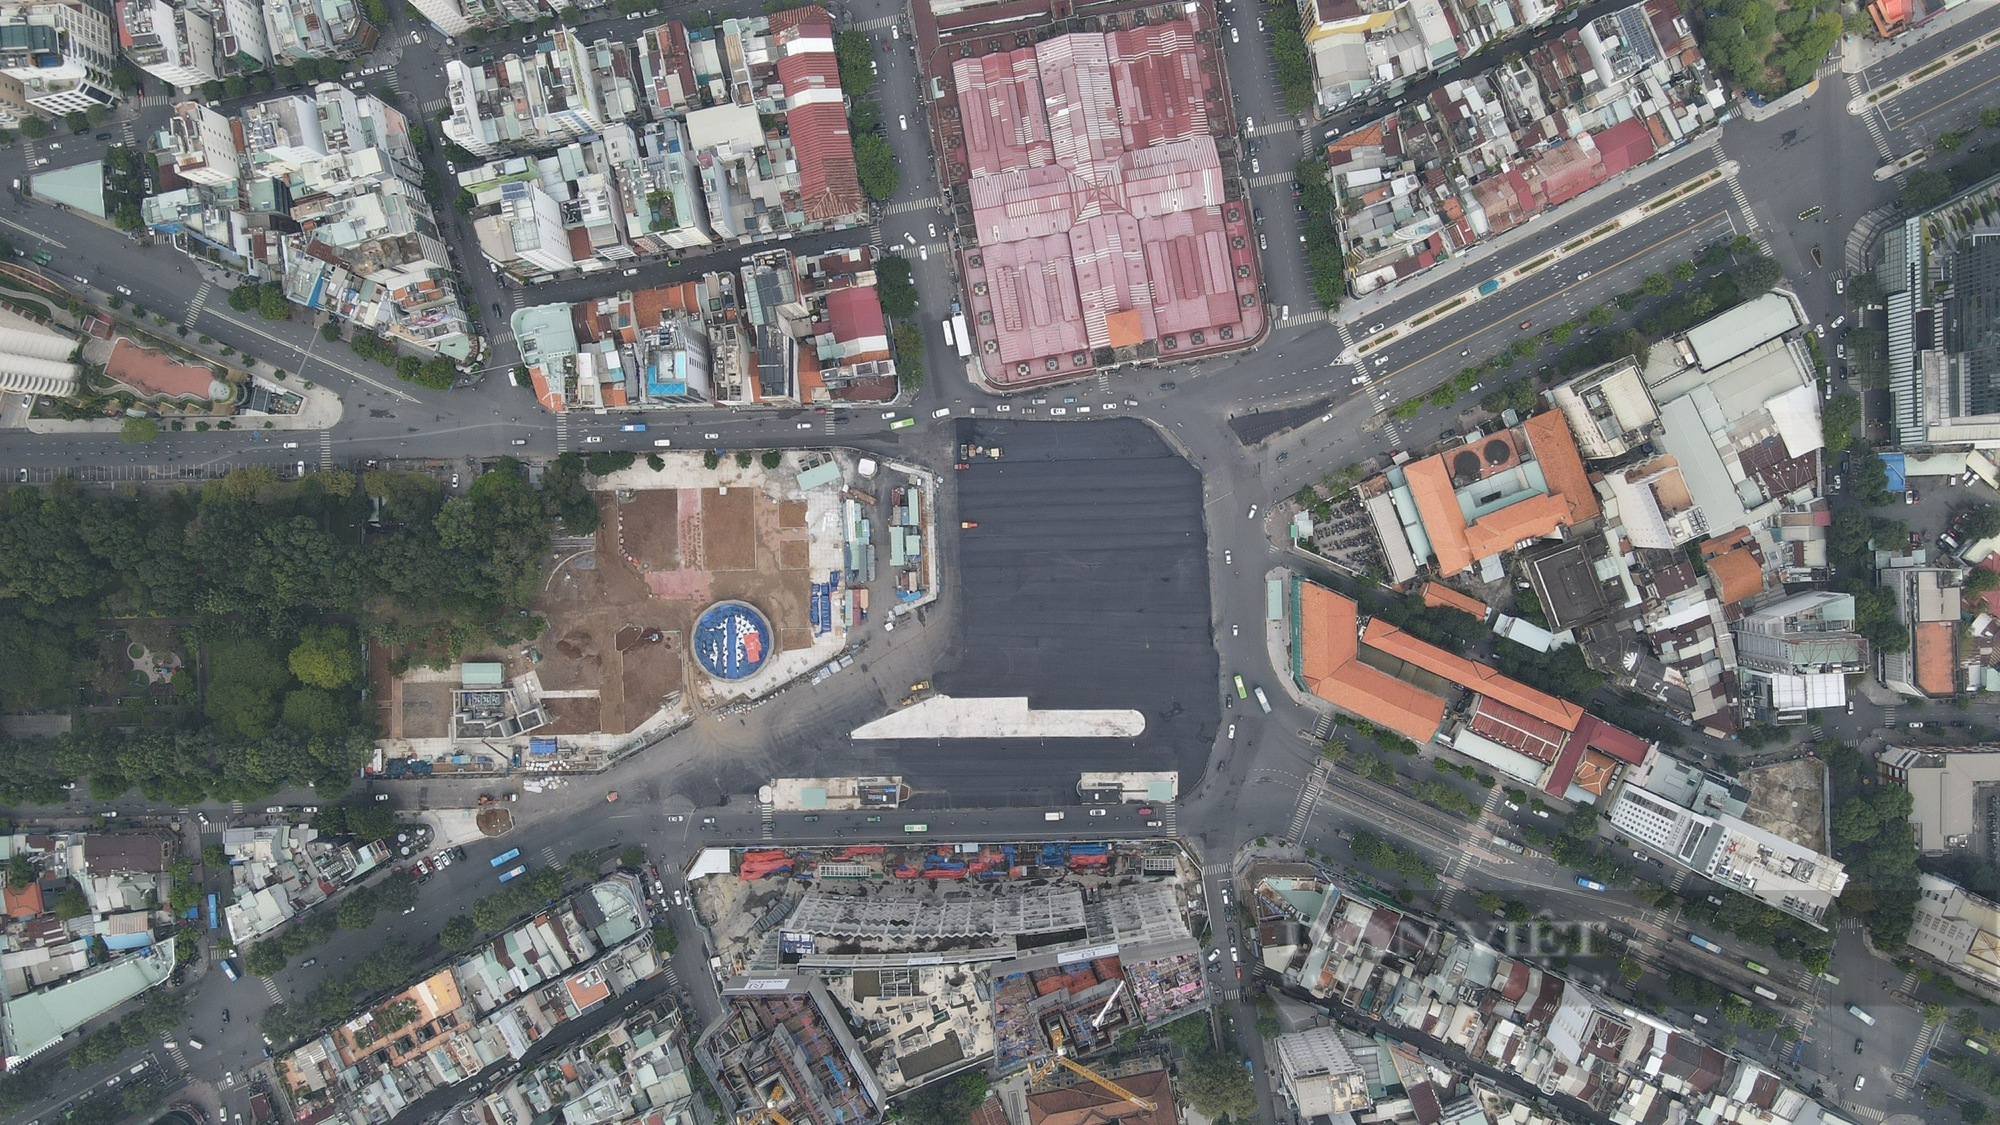 Chuẩn bị trả mặt bằng phía trước chợ Bến Thành: Giảm ùn tắc giao thông xung quanh mặt đường Lê Lợi - Ảnh 3.